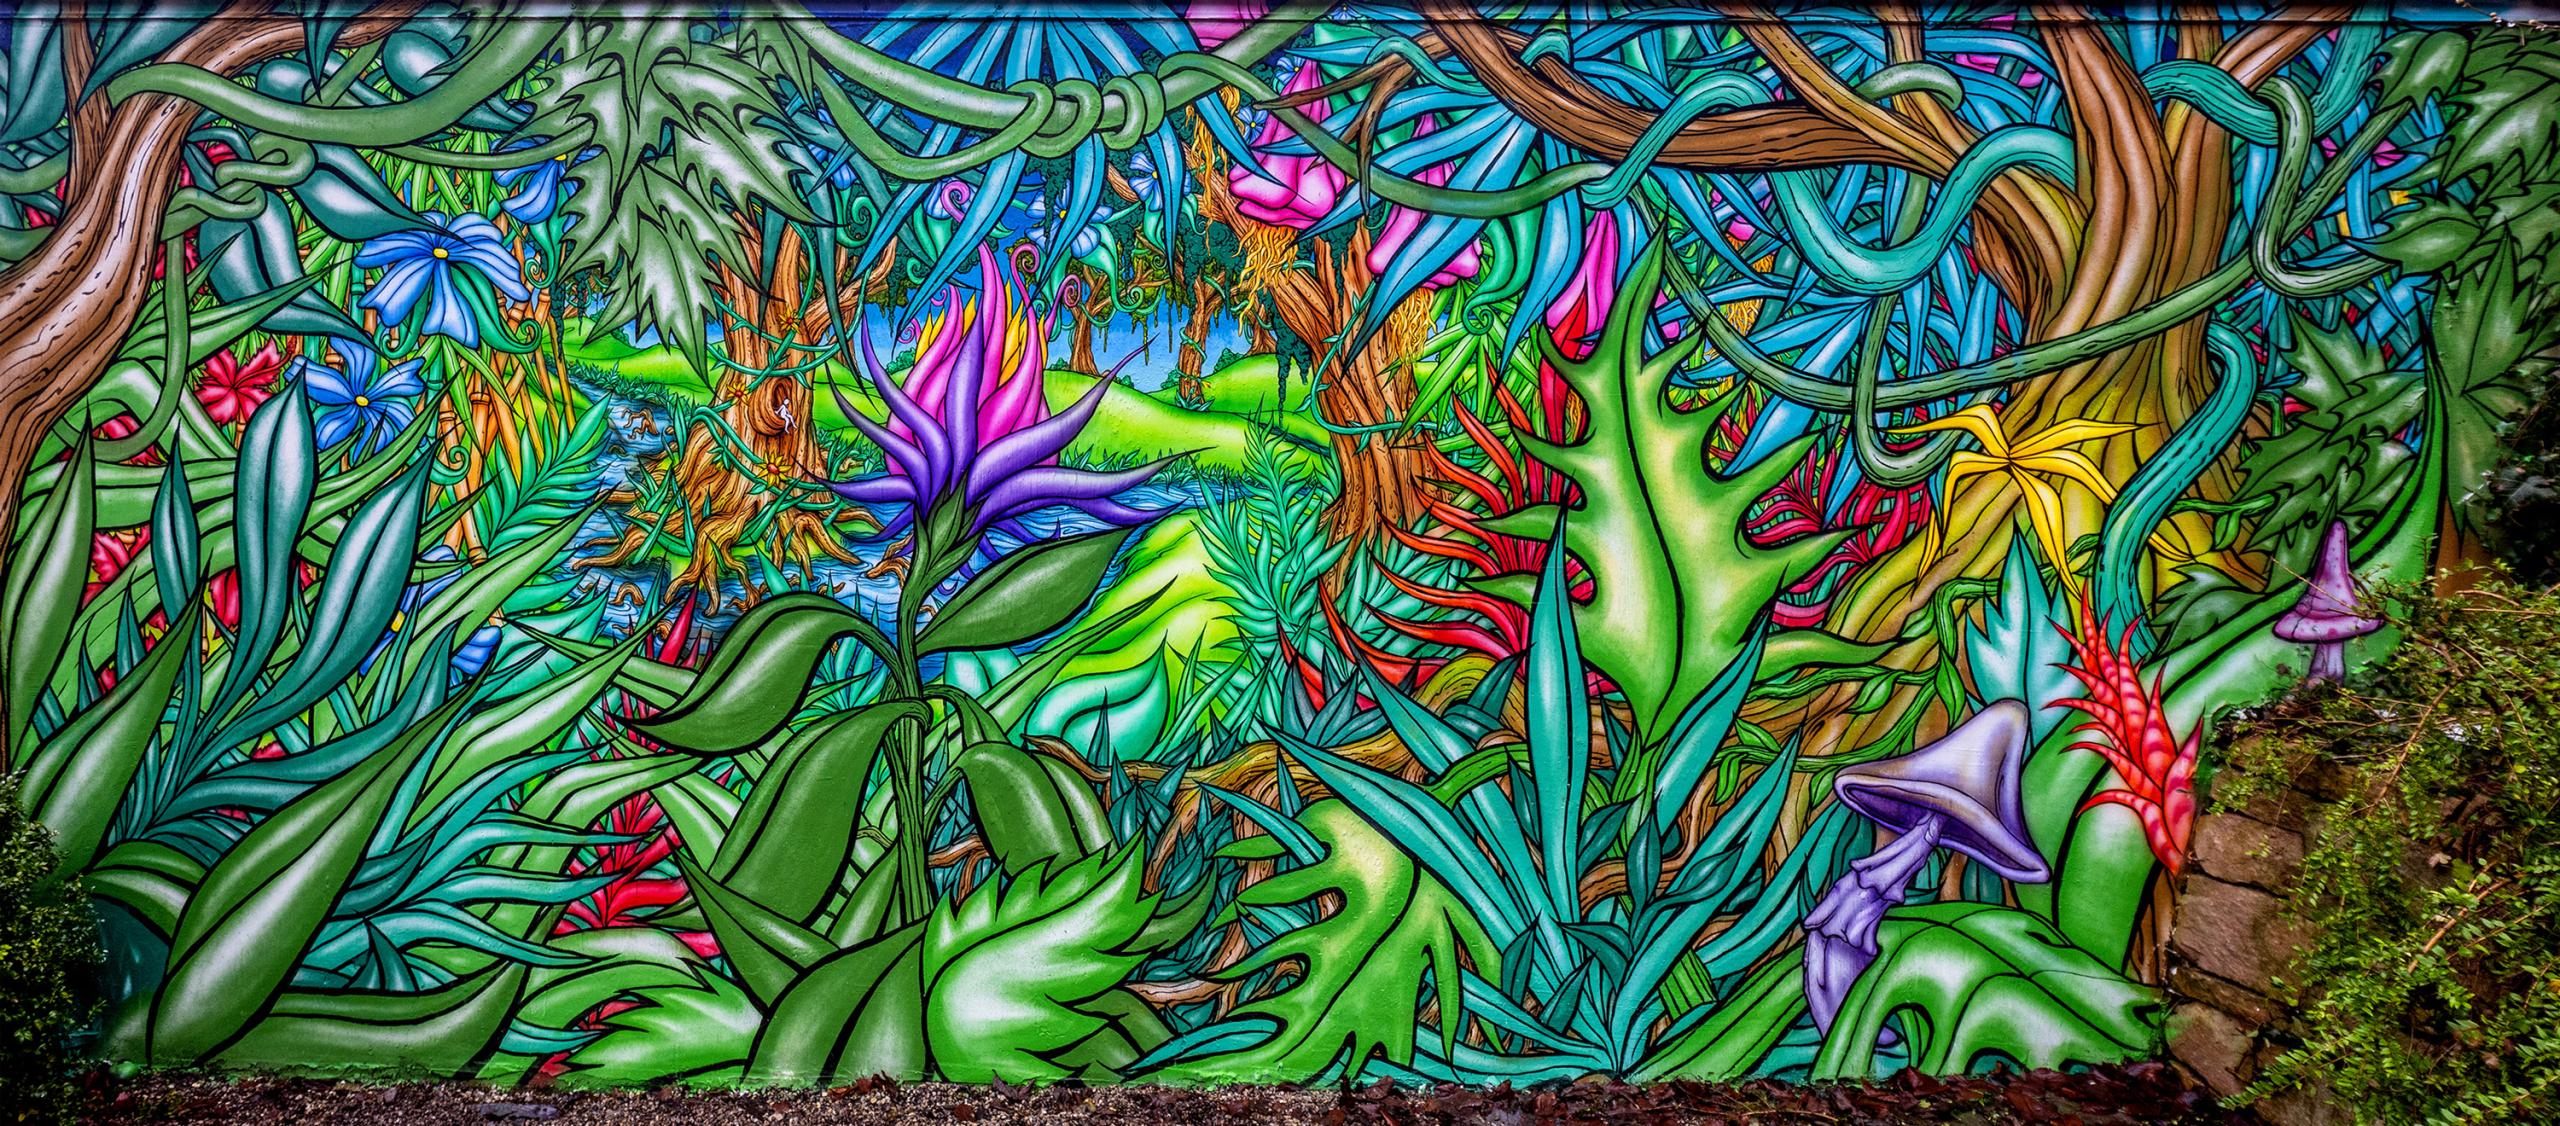 Pflanzen, Blumen und Pilze wachsen wie ein Dschungel auf einem Wandbild ineinander.